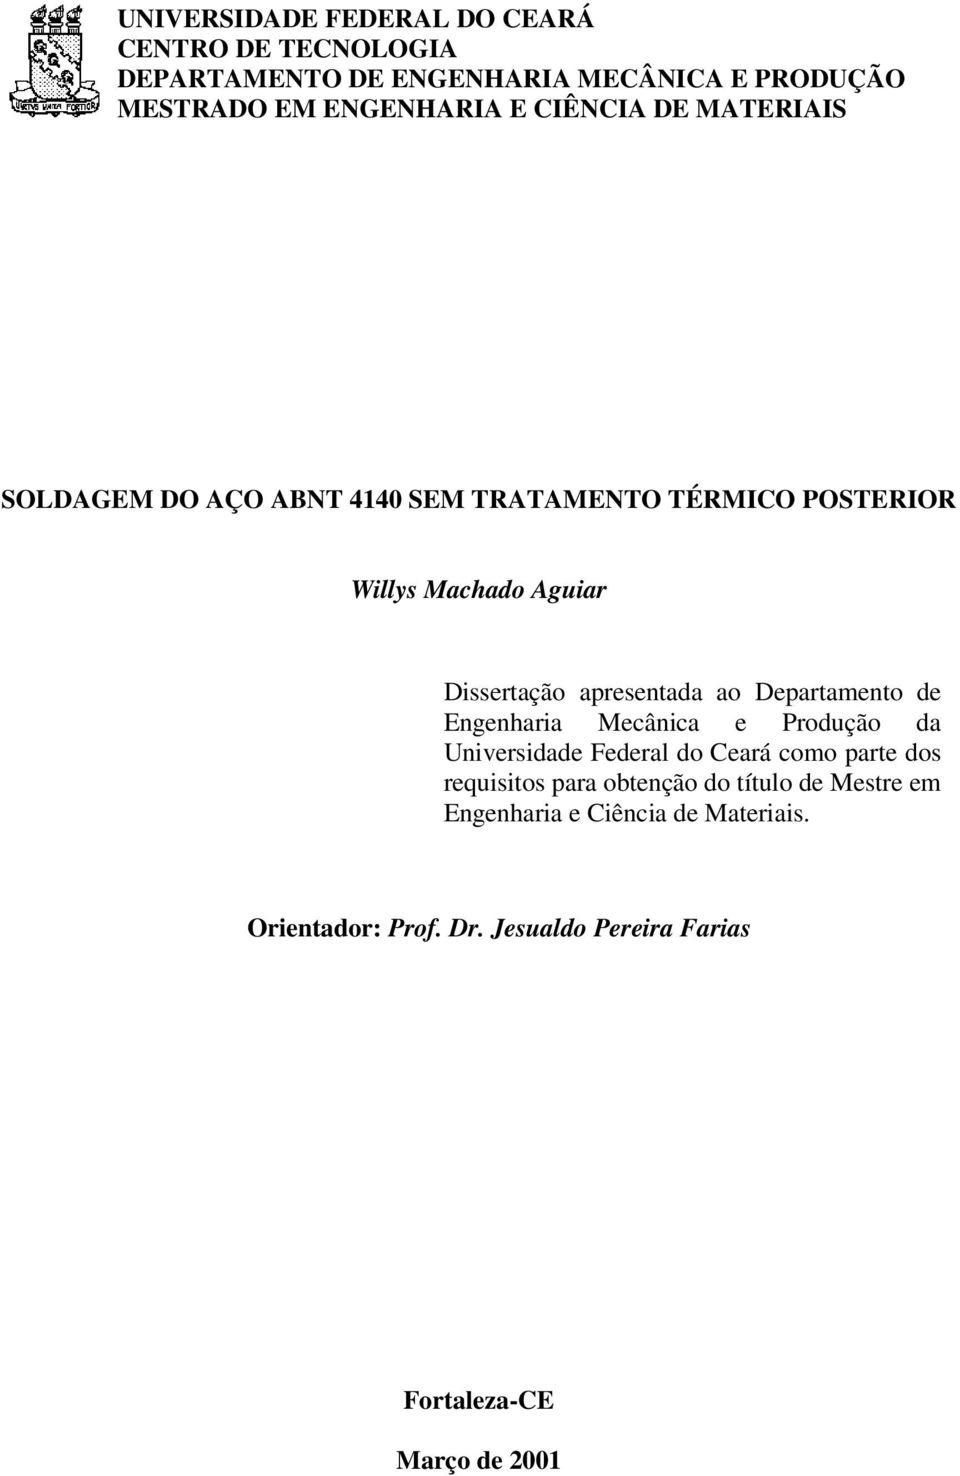 ao Departamento de Engenharia Mecânica e Produção da Universidade Federal do Ceará como parte dos requisitos para obtenção do